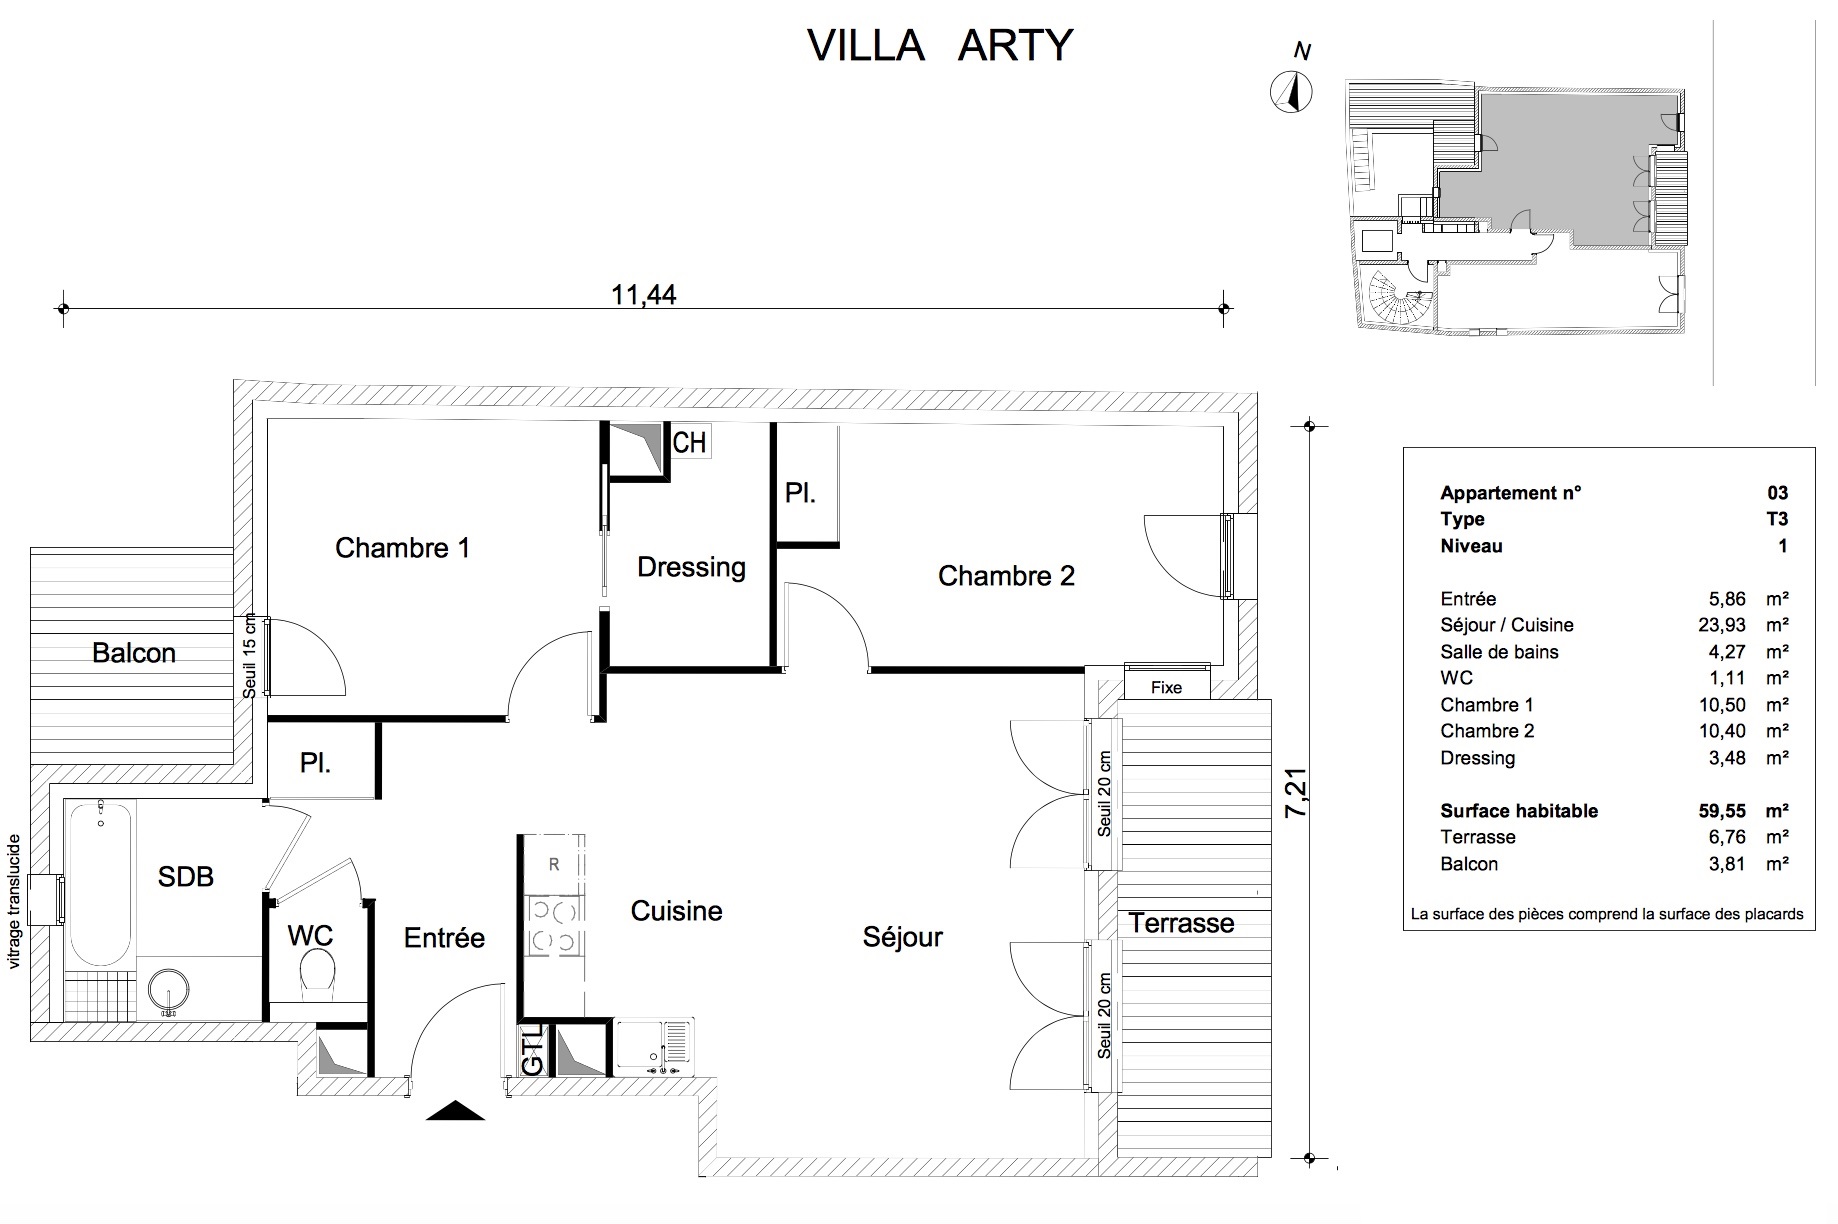 T3 - 59,55 m² - 1er étage - Loggia 6,76 m² - Balcon 3,81 m² - Documentation - Nous contacter